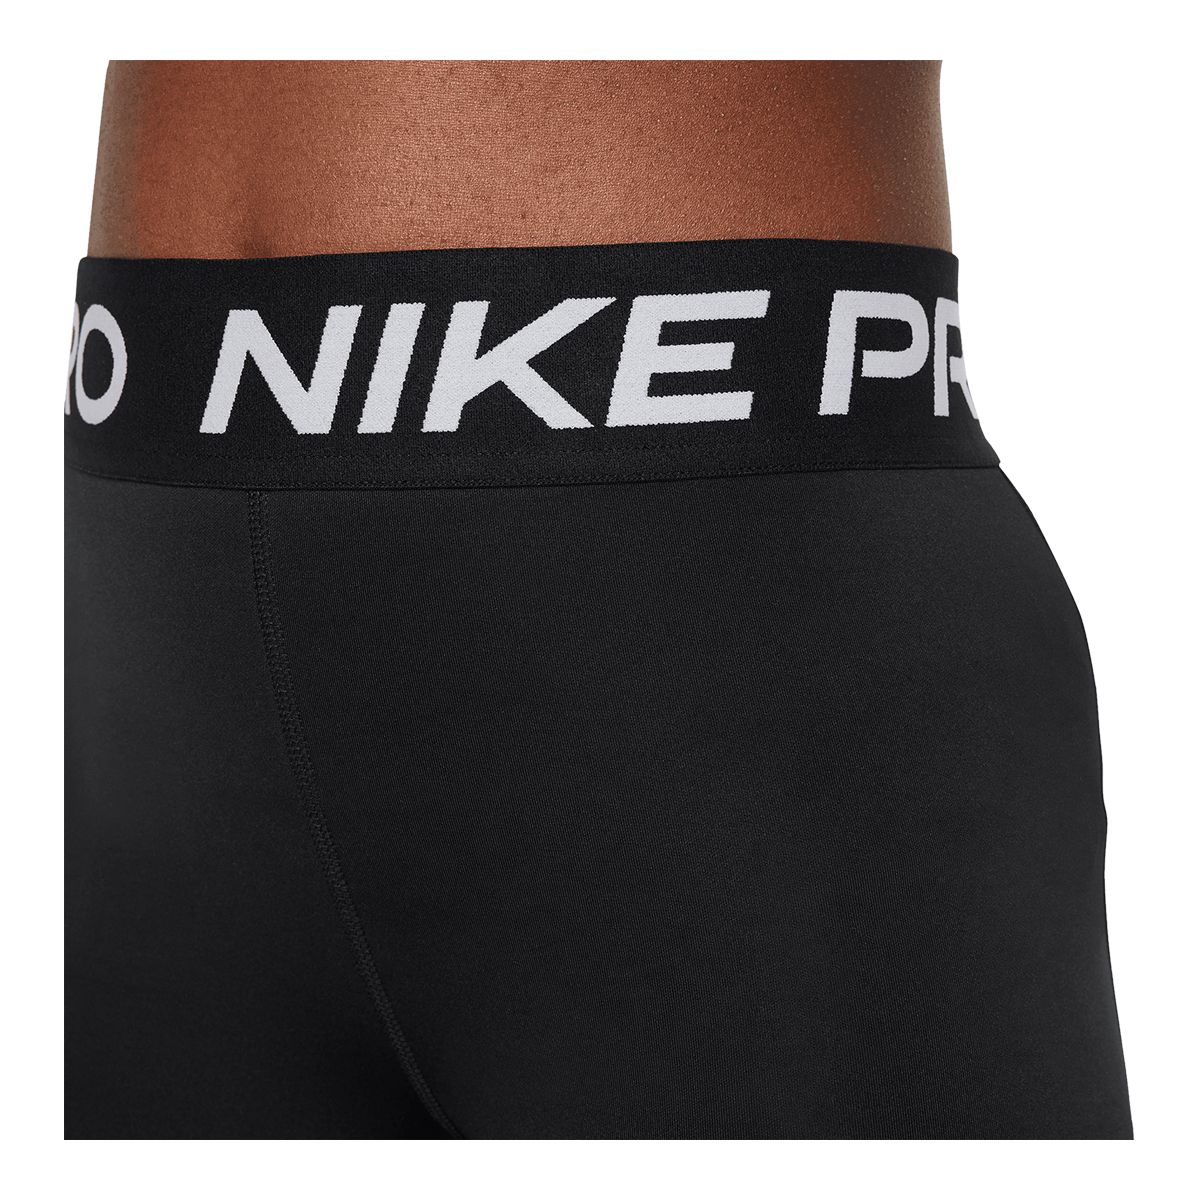 Girls Nike Pro XS shorts and sports bra set